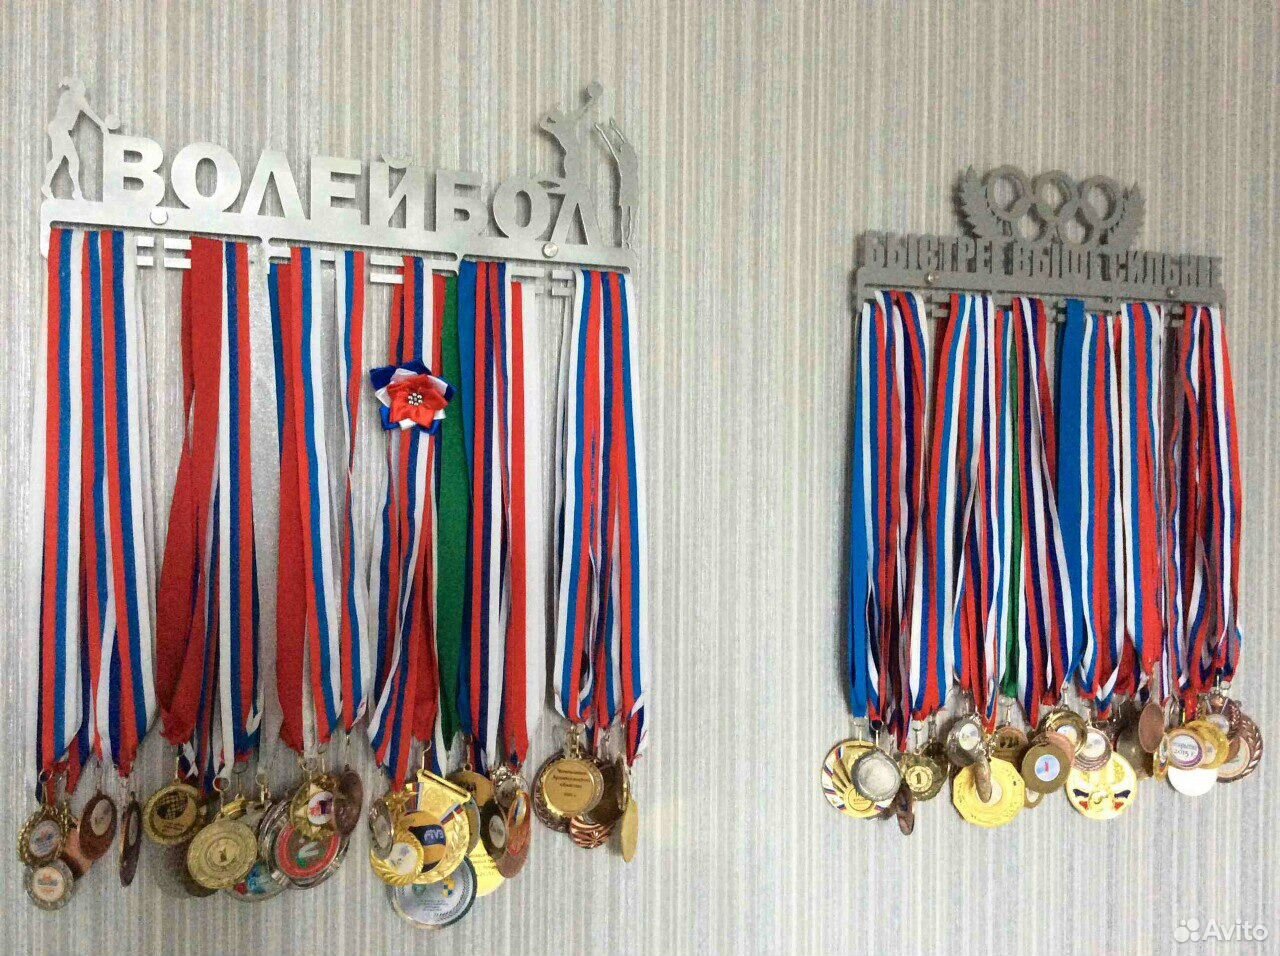 Для спортивных медалей на стену